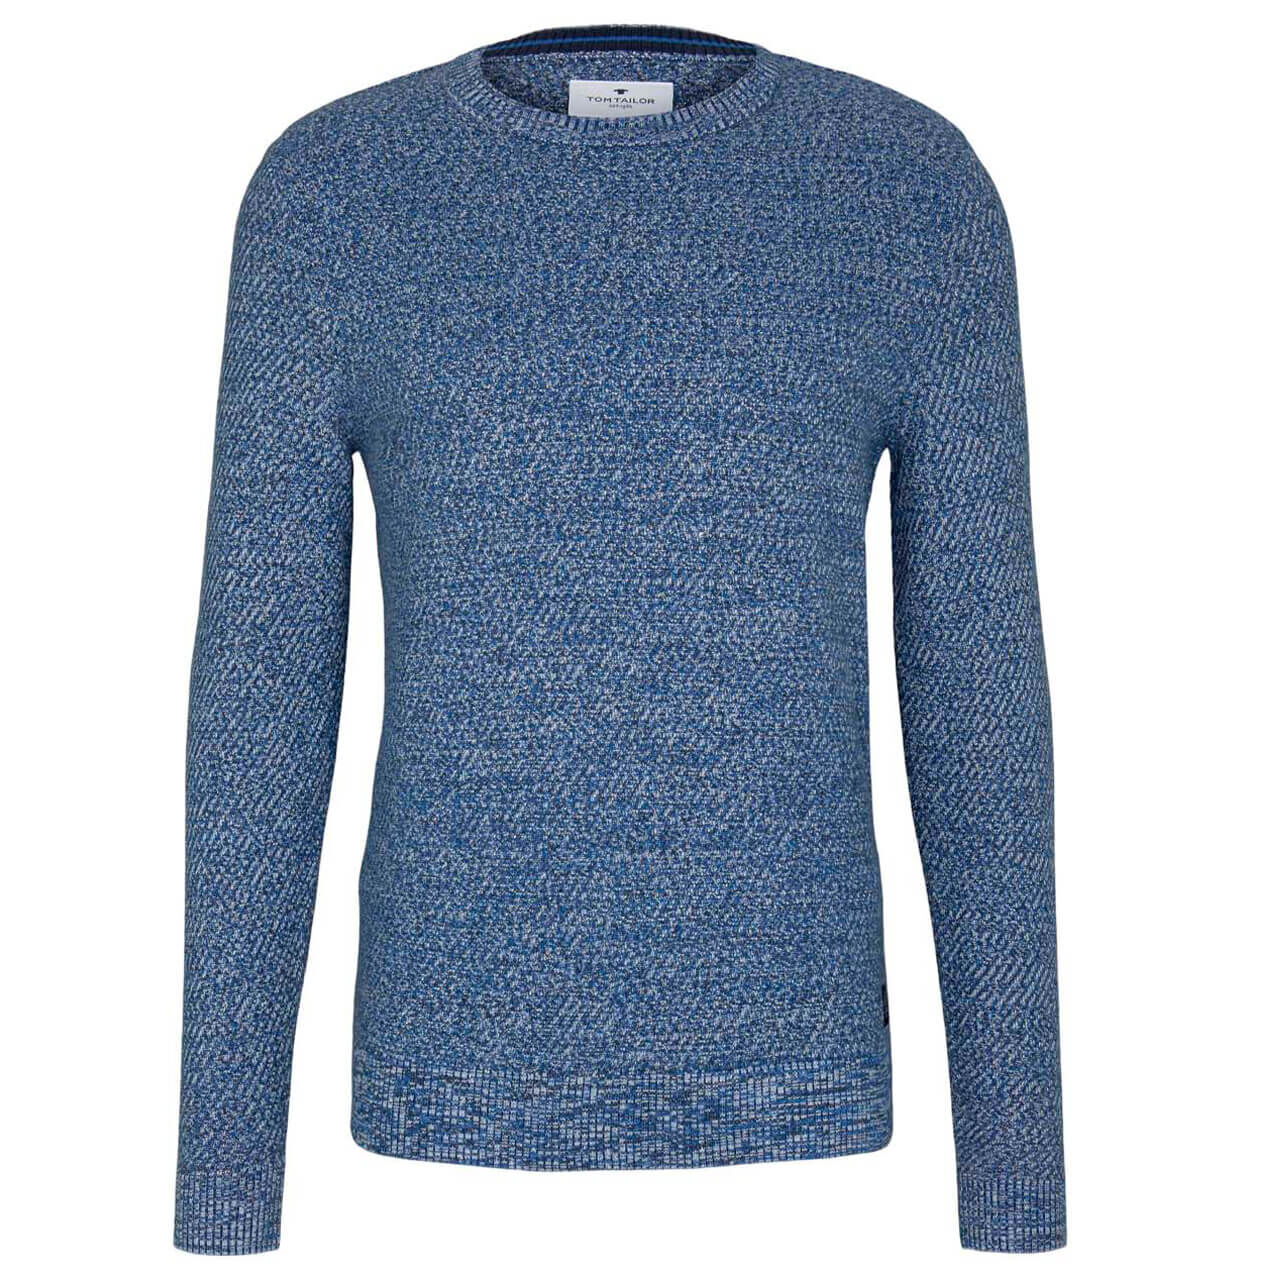 Tom Tailor Structured Basic Sweater Pullover für Herren in Dunkelblau meliert, FarbNr.: 25837